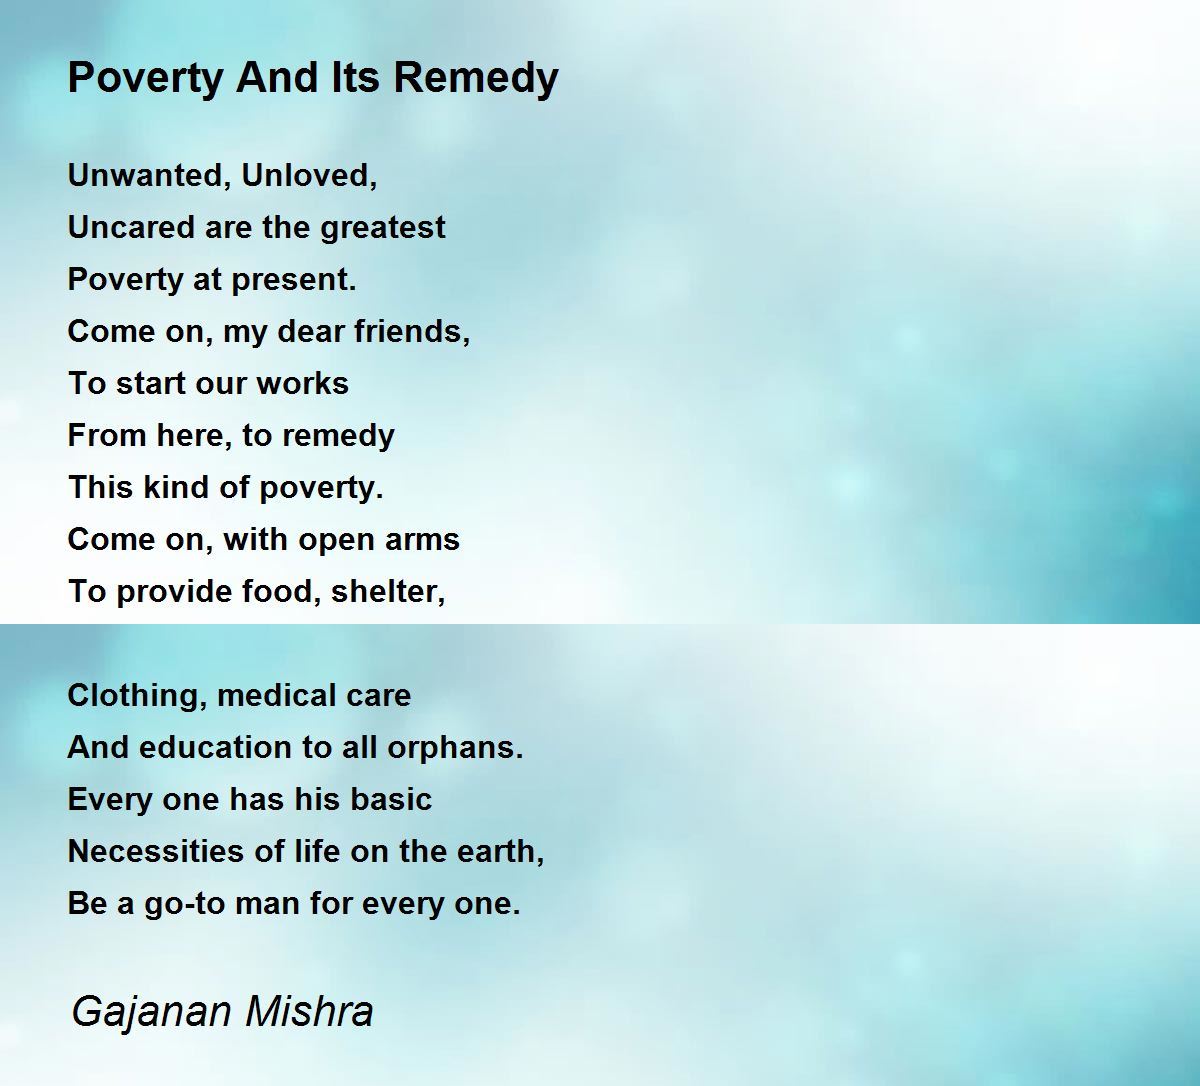 Poverty And Its Remedy - Poverty And Its Remedy Poem by Gajanan Mishra